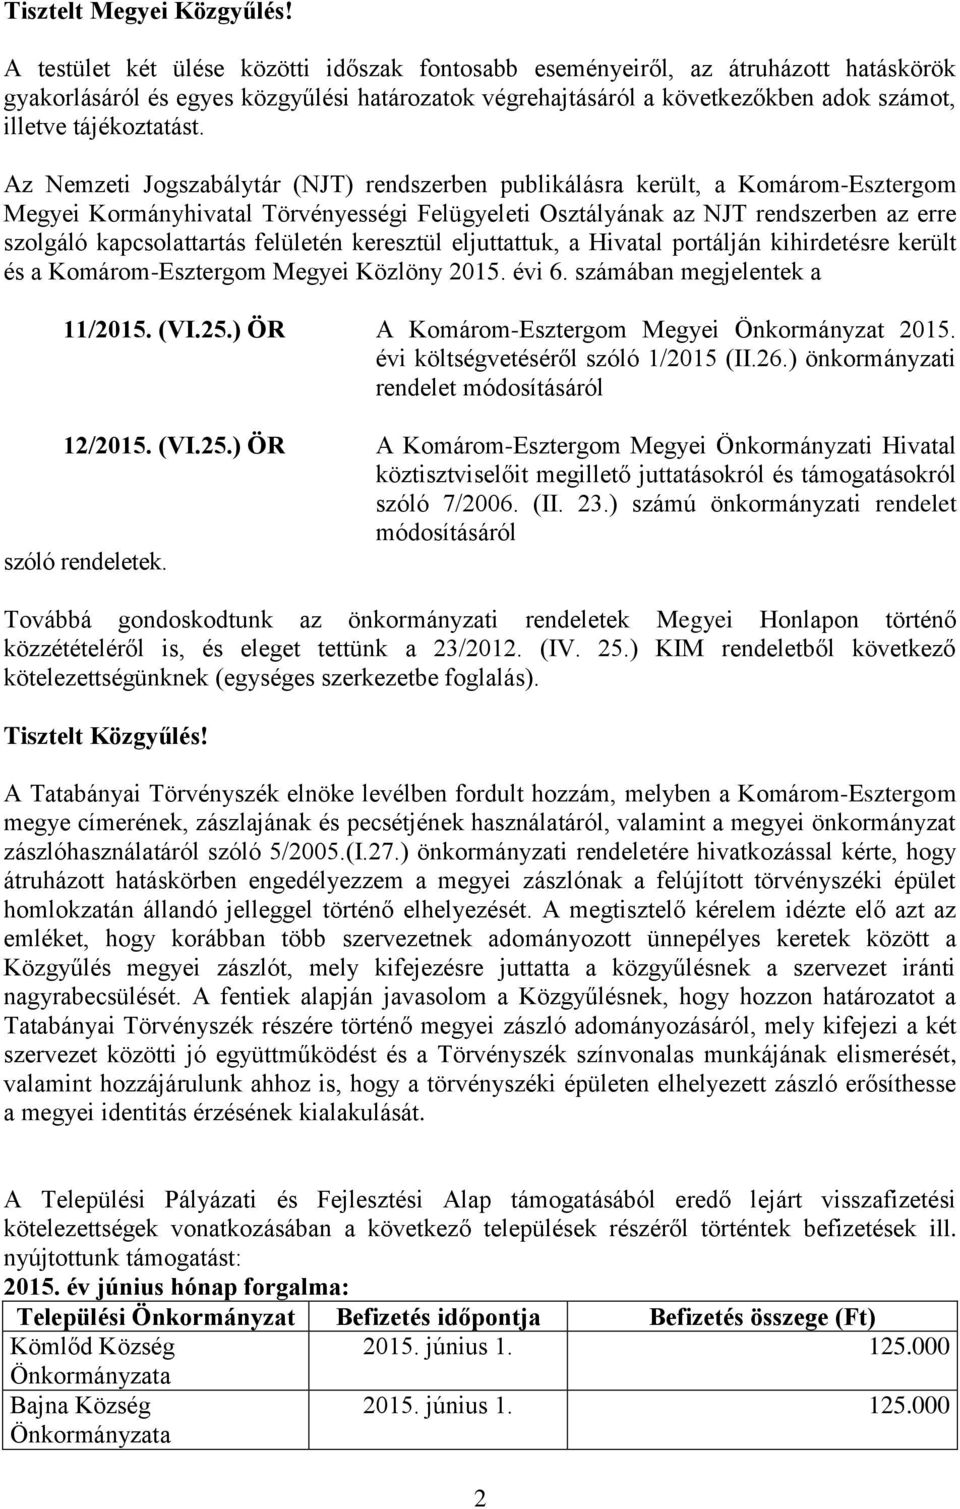 Az Nemzeti Jogszabálytár (NJT) rendszerben publikálásra került, a Komárom-Esztergom Megyei Kormányhivatal Törvényességi Felügyeleti Osztályának az NJT rendszerben az erre szolgáló kapcsolattartás